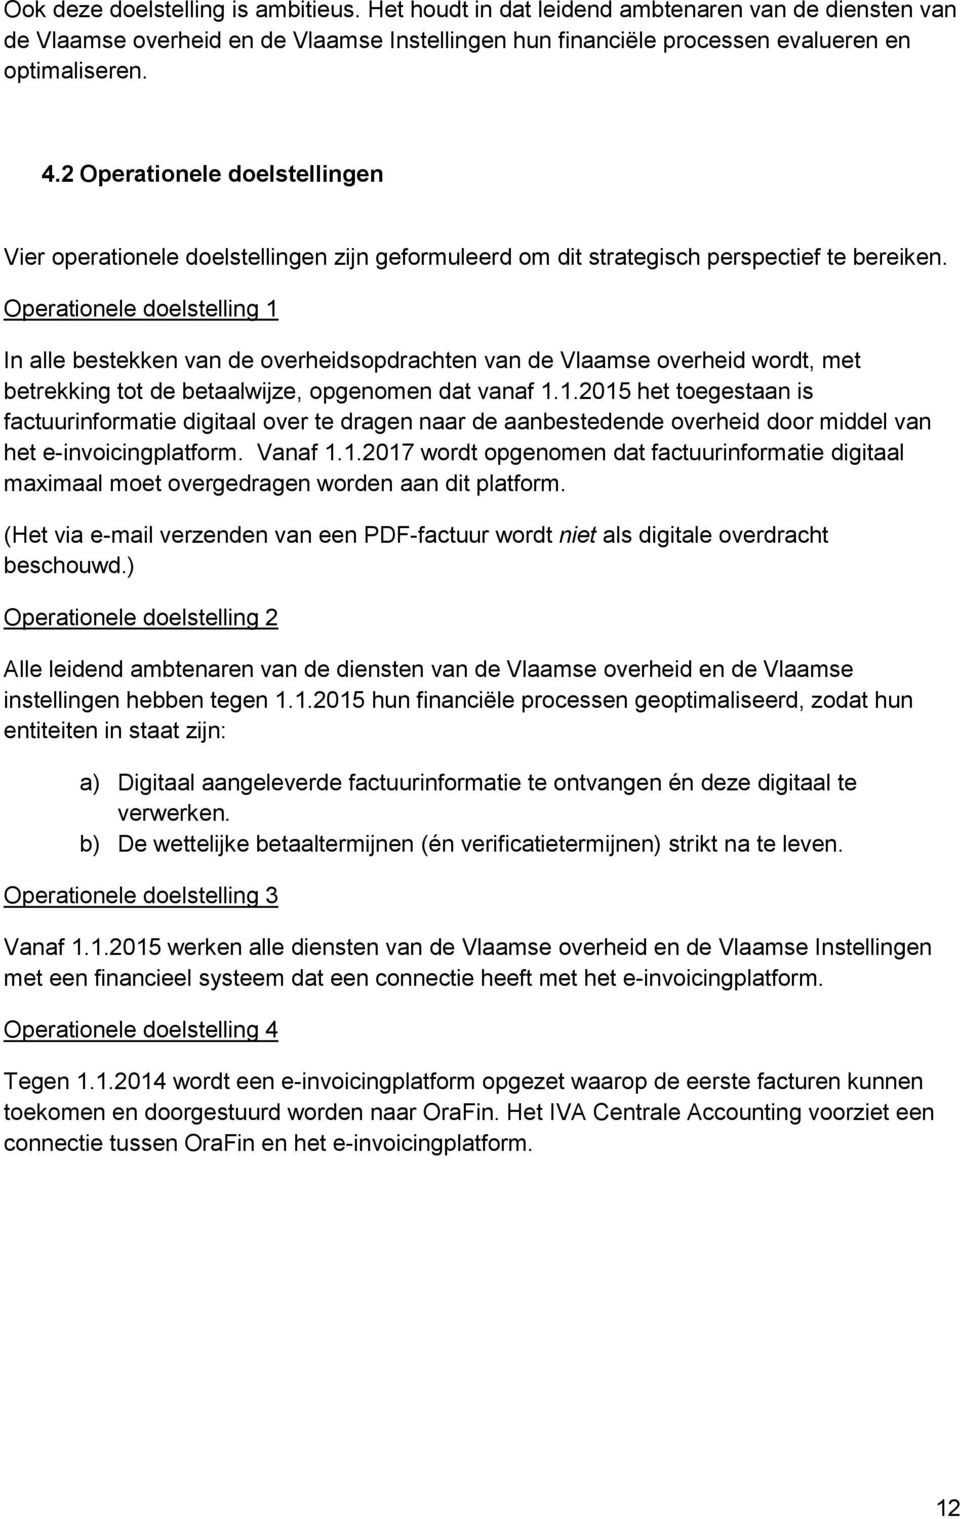 Operationele doelstelling 1 In alle bestekken van de overheidsopdrachten van de Vlaamse overheid wordt, met betrekking tot de betaalwijze, opgenomen dat vanaf 1.1.2015 het toegestaan is factuurinformatie digitaal over te dragen naar de aanbestedende overheid door middel van het e-invoicingplatform.